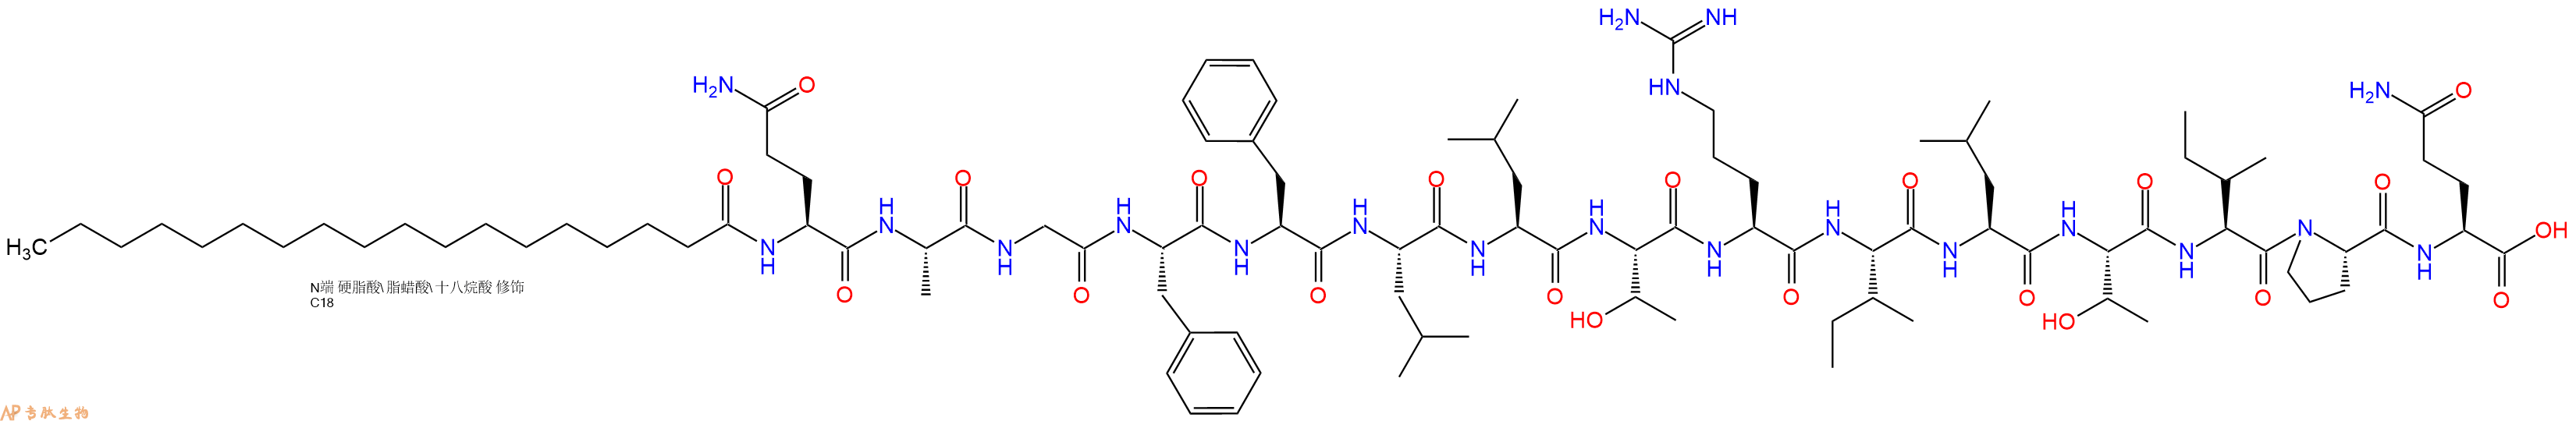 专肽生物产品Stearicacid-Gln-Ala-Gly-Phe-Phe-Leu-Leu-Thr-Arg-Il